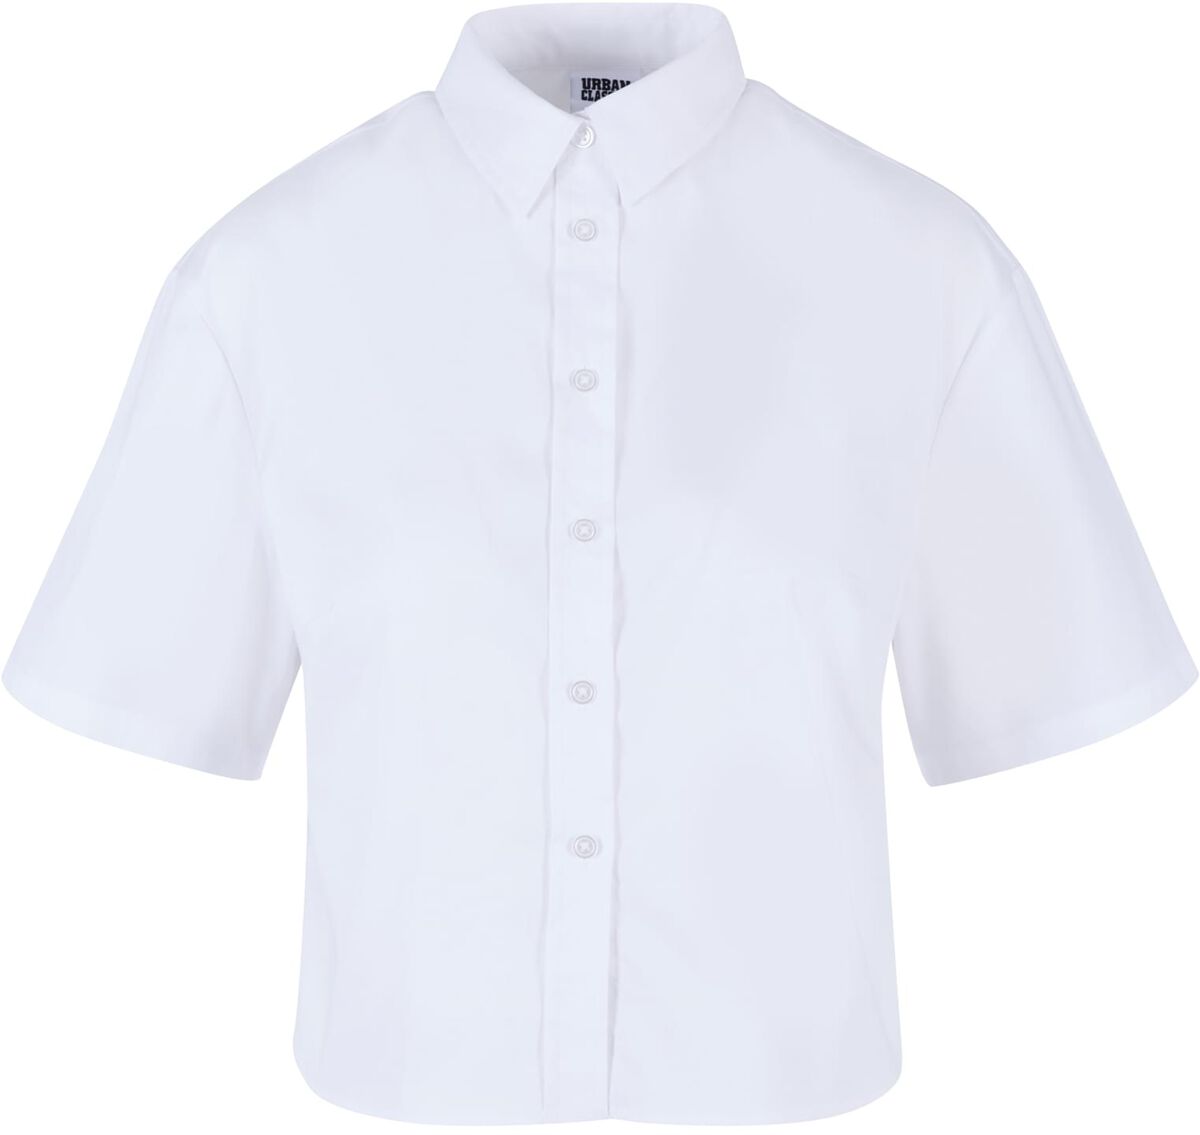 Urban Classics Kurzarmhemd - Ladies Oversized Shirt - XS bis 3XL - für Damen - Größe 3XL - weiß